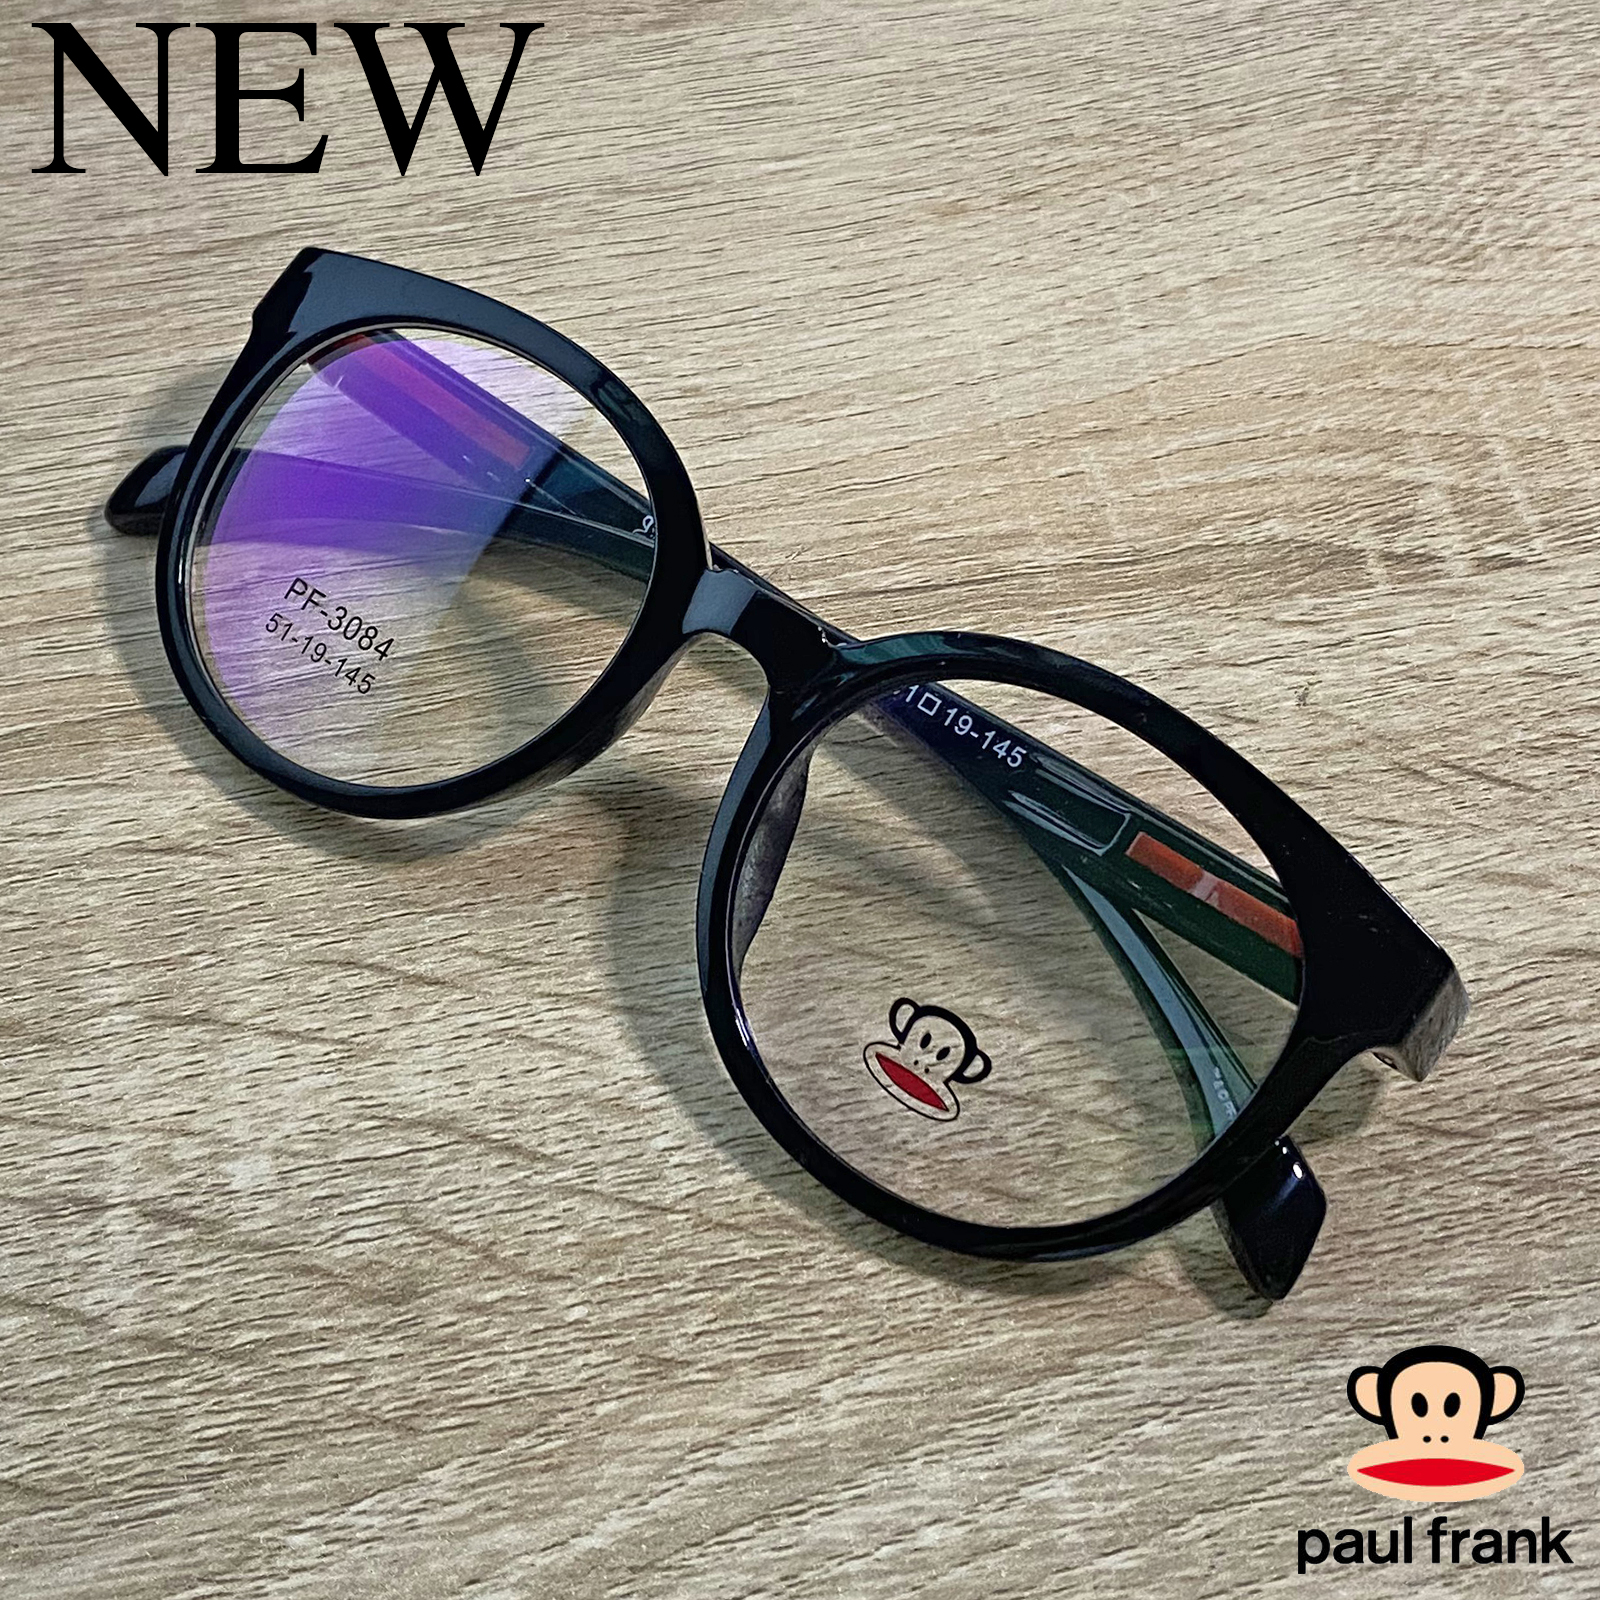 กรอบแว่นตา สำหรับตัดเลนส์ แว่นตาชาย หญิง Fashion รุ่น Paul Frank 3084 สีดำ กรอบเต็ม ทรงรี ขาข้อต่อ วัสดุ TR 90 รับตัดเลนส์ทุกชนิด